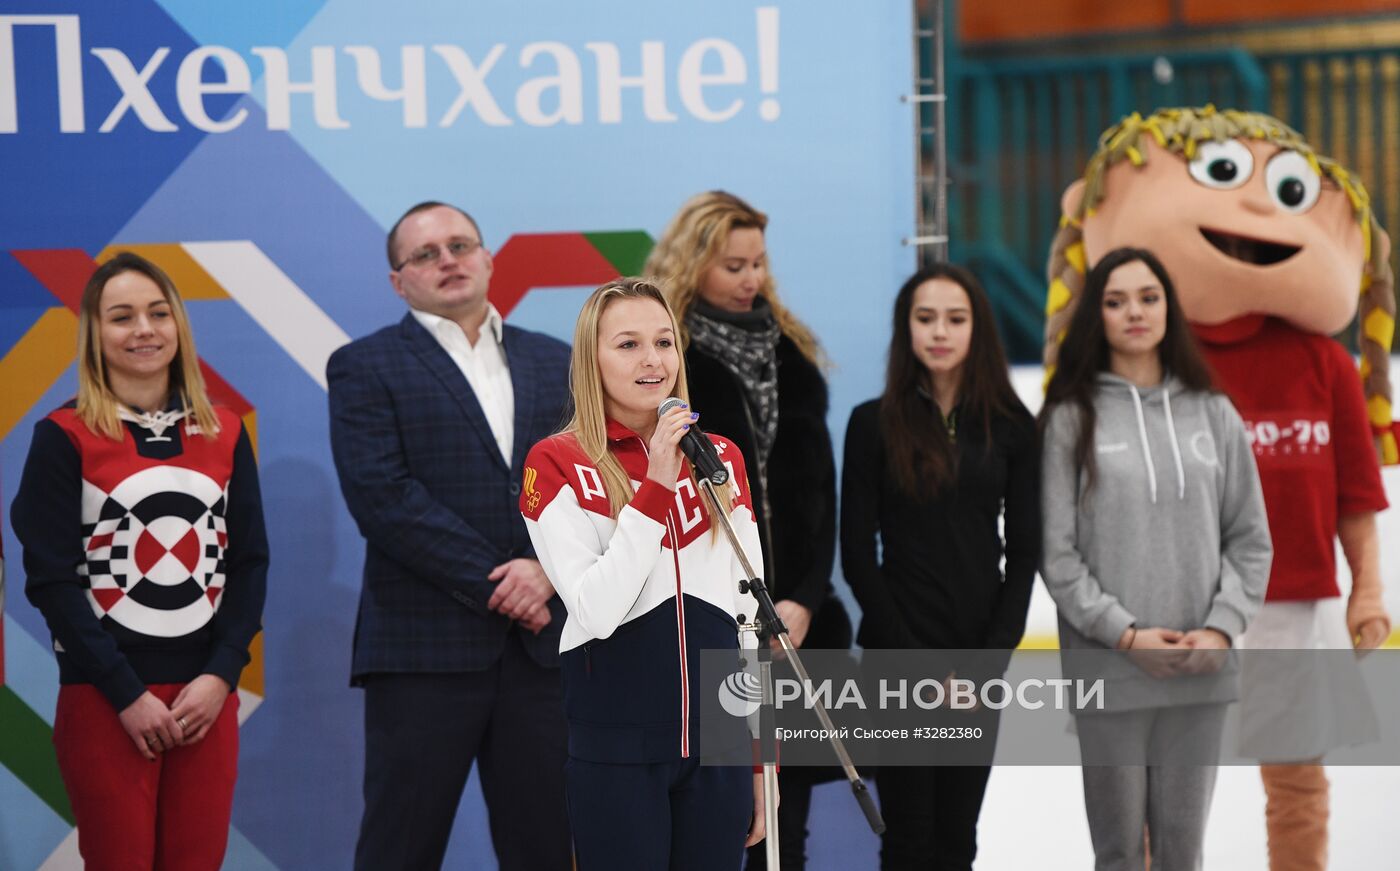 Проводы фигуристок Е. Медведевой и А. Загитовой на Олимпиаду в Пхенчхан